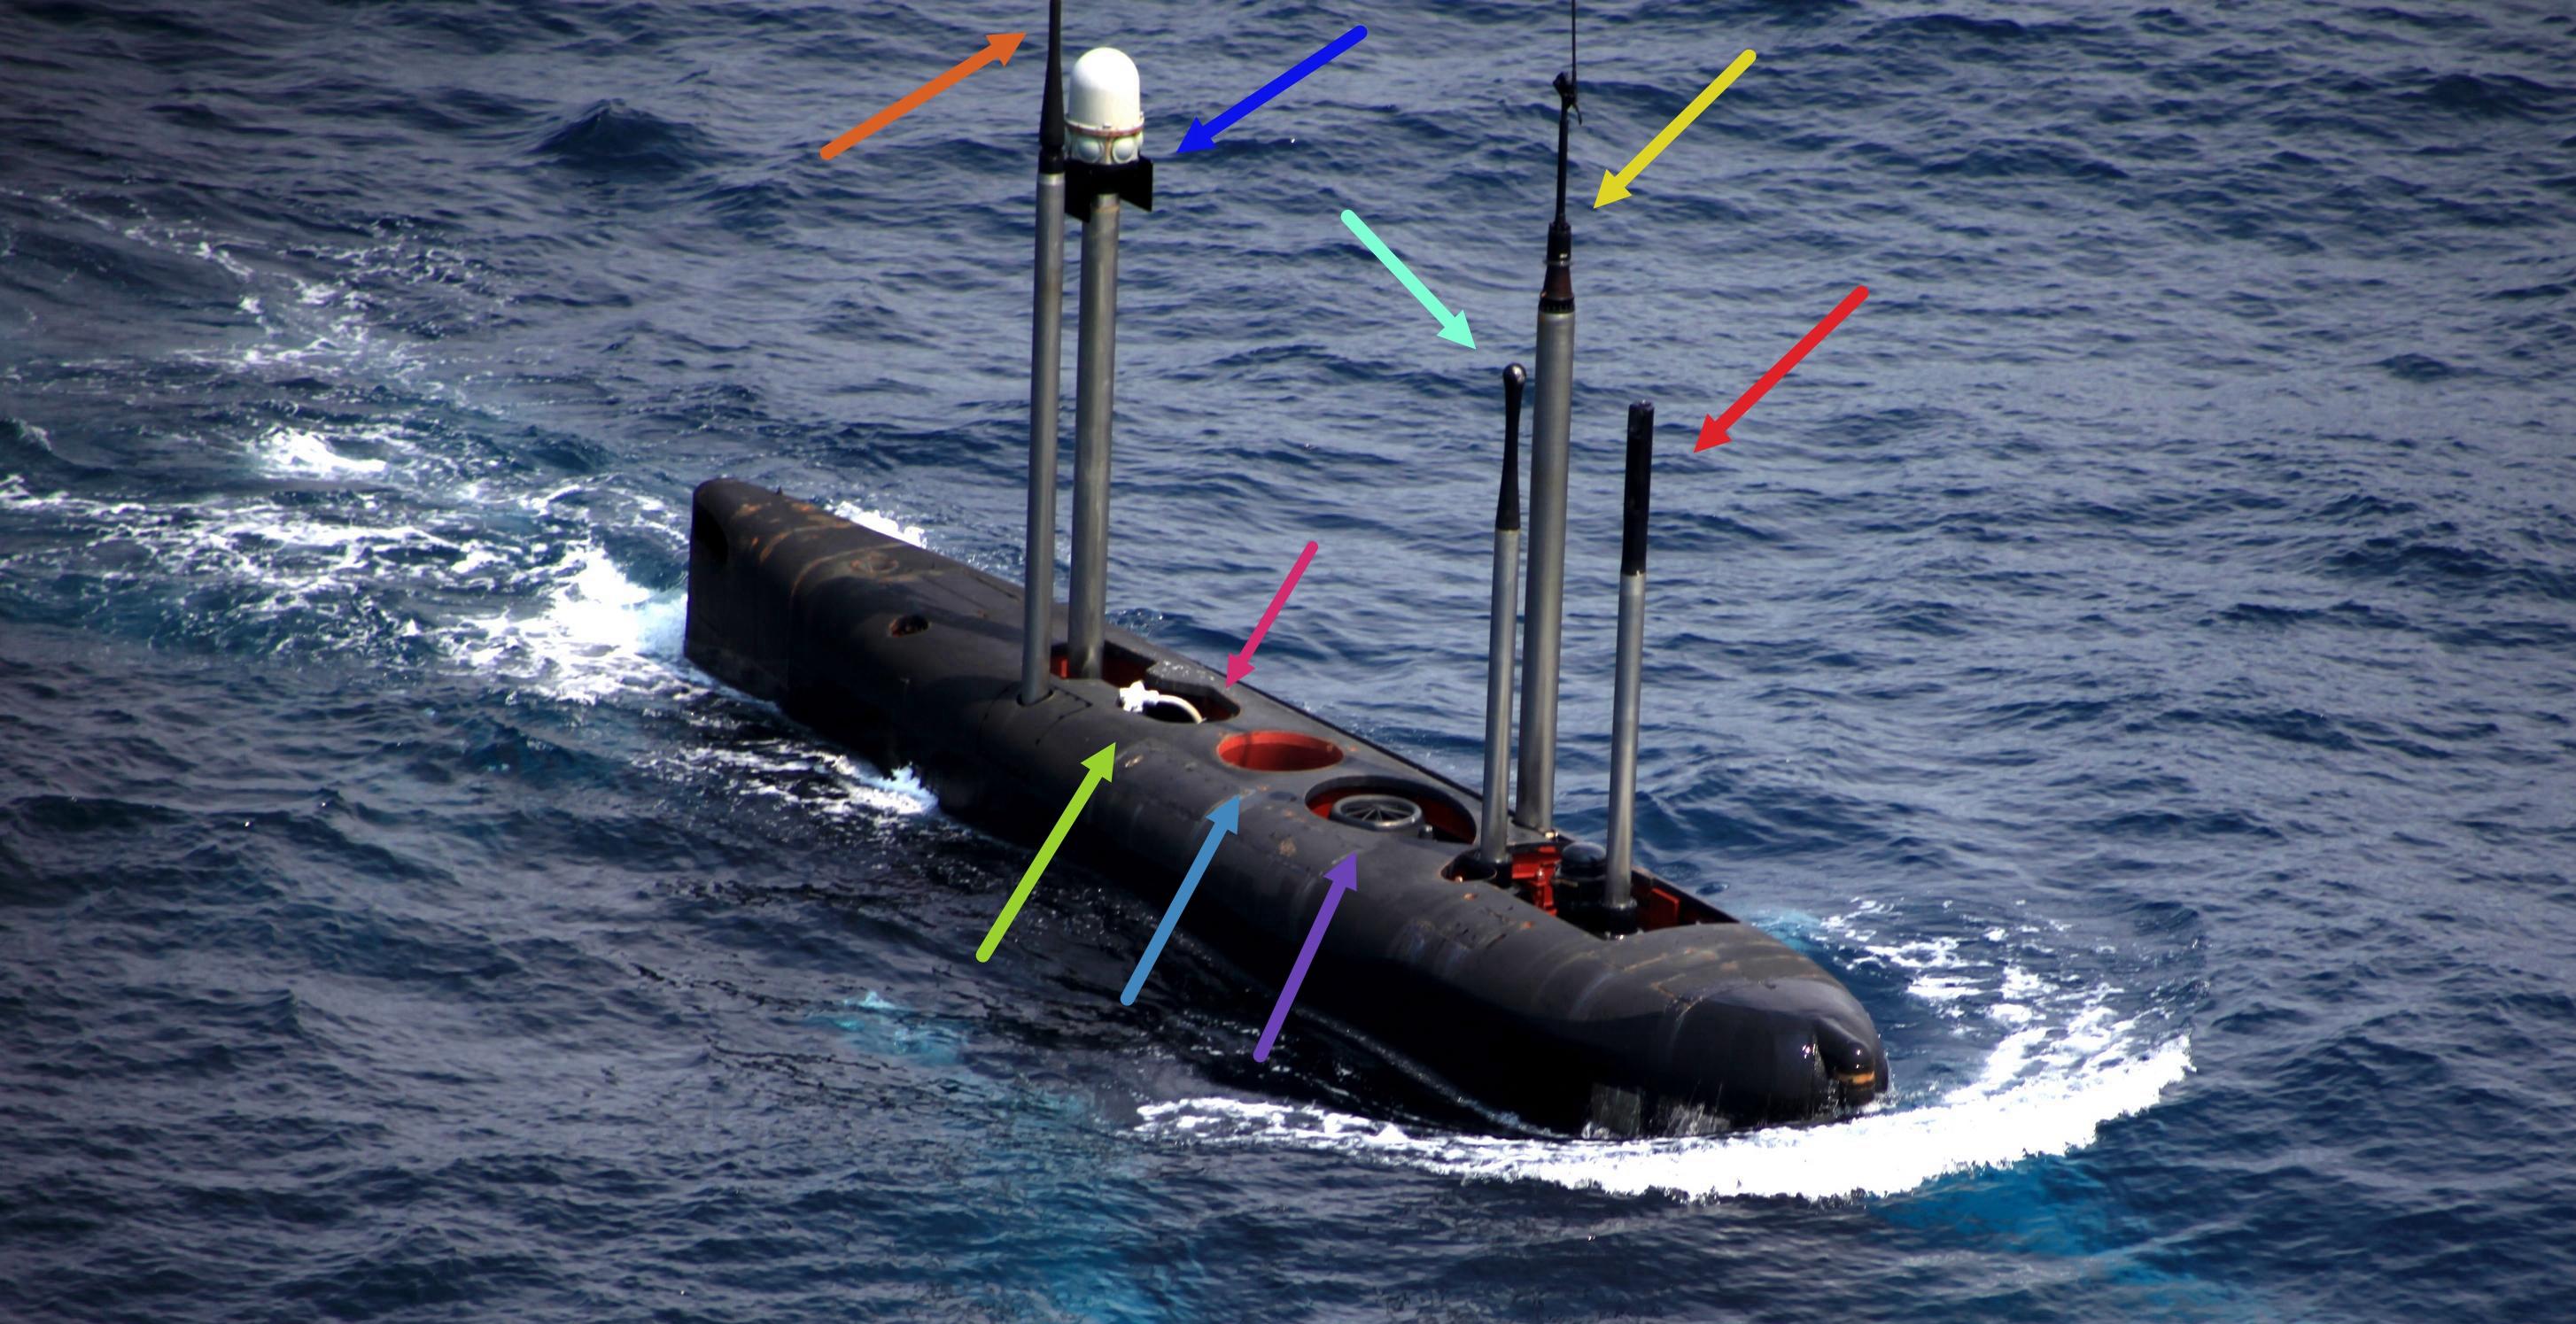 潜艇的桅杆一般分为以下几种:潜望镜(periscope mast),又细分为攻击